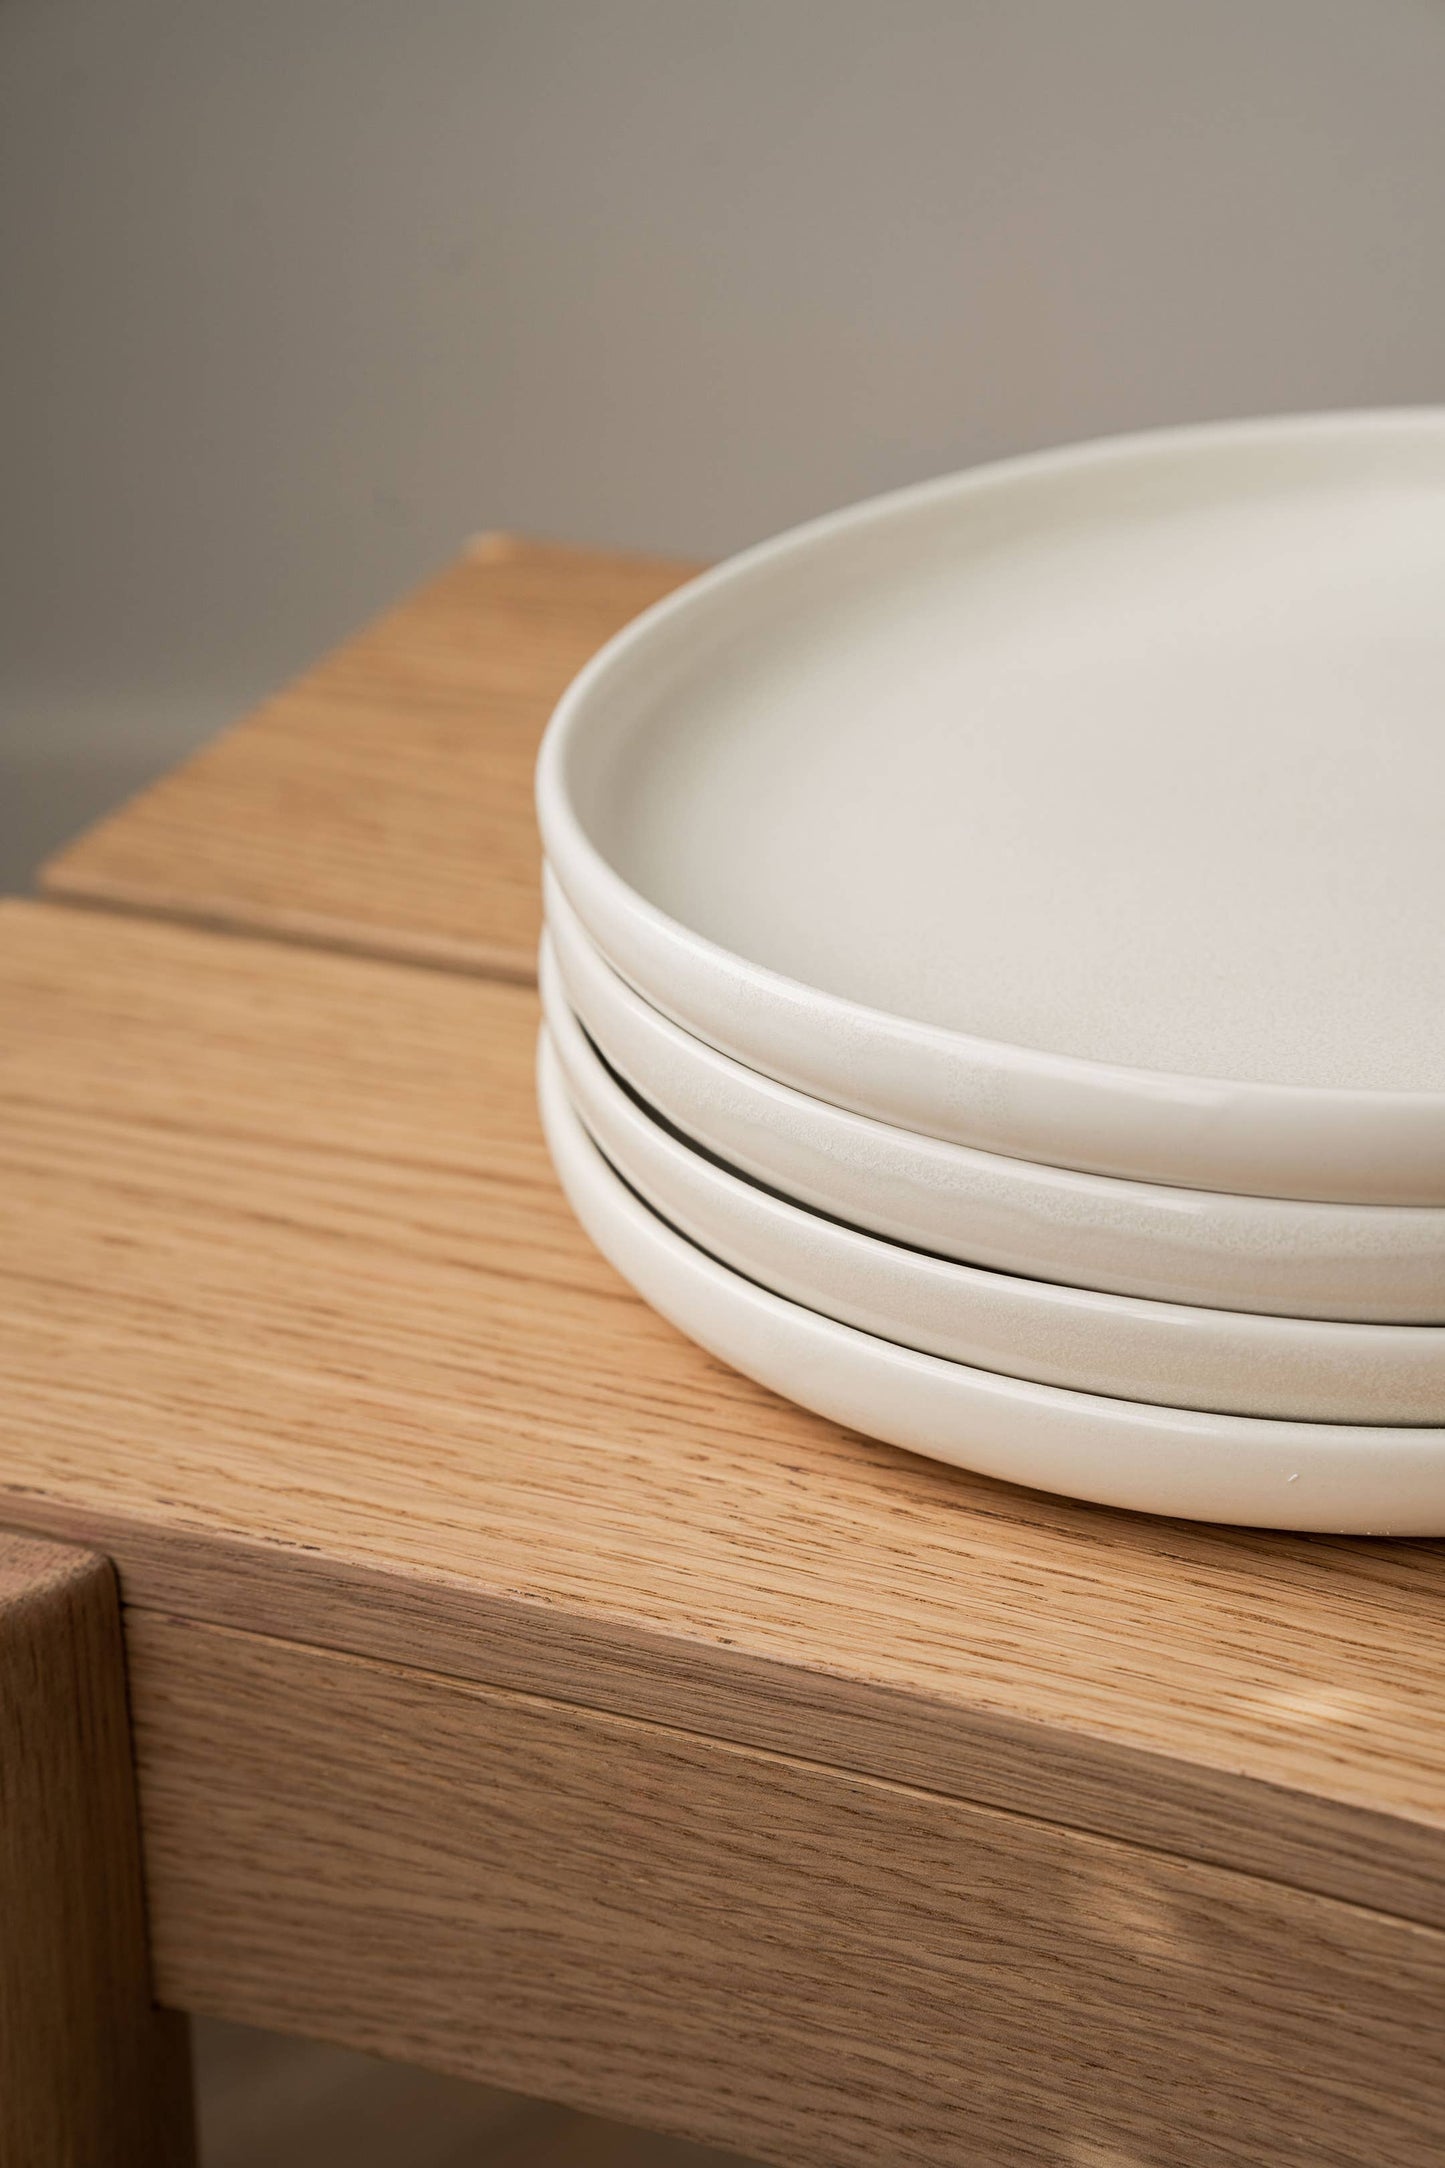 Ethical Trade Co Tabletop Dinner Plate / White (Round Sides) Handmade Ukrainian Stoneware Matte Dinner Plates